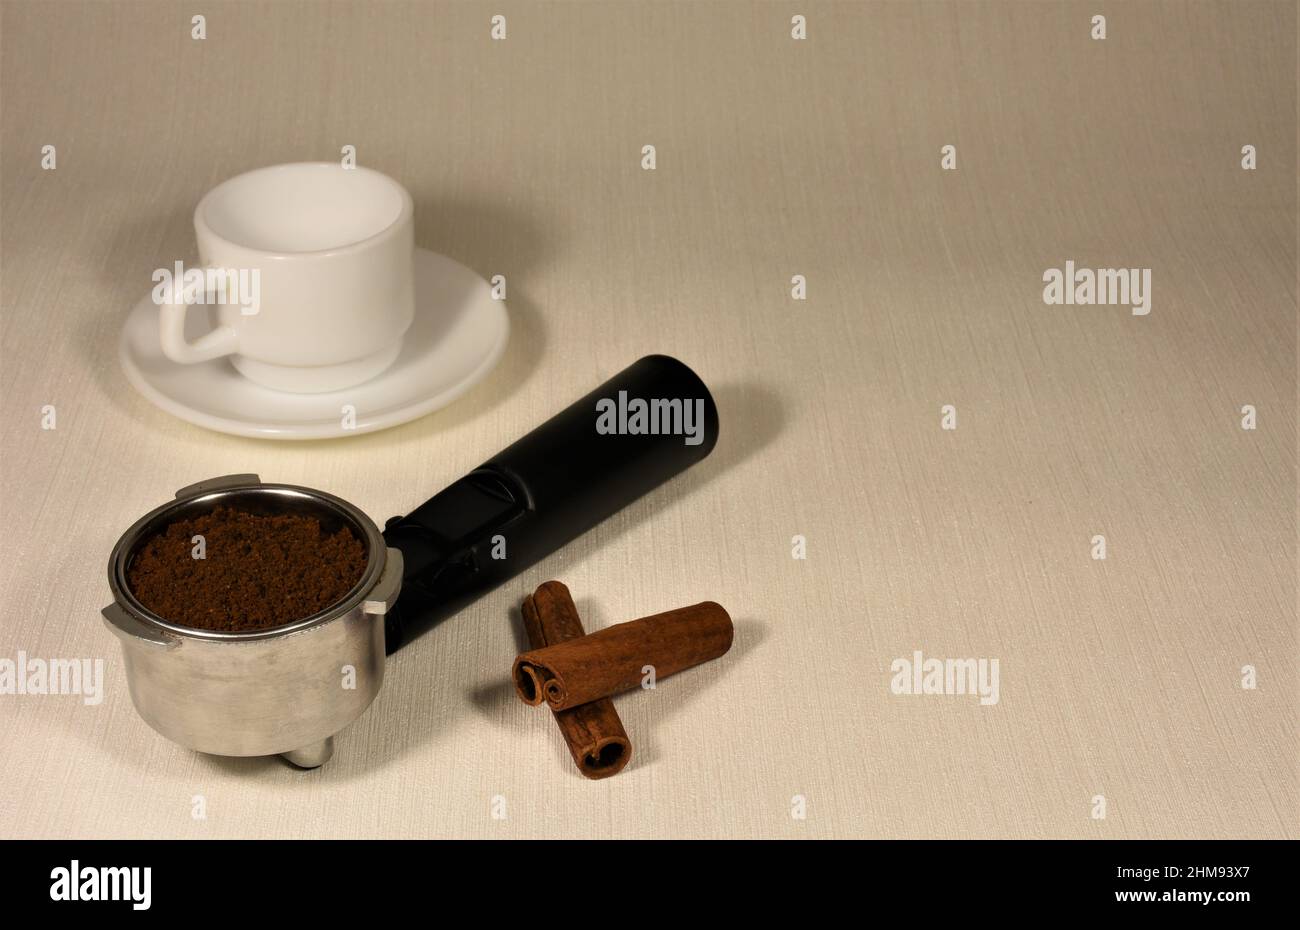 Tazza di caffè in porcellana bianca vuota, filtro per caffè e bastoncini di cannella su sfondo chiaro. Foto Stock